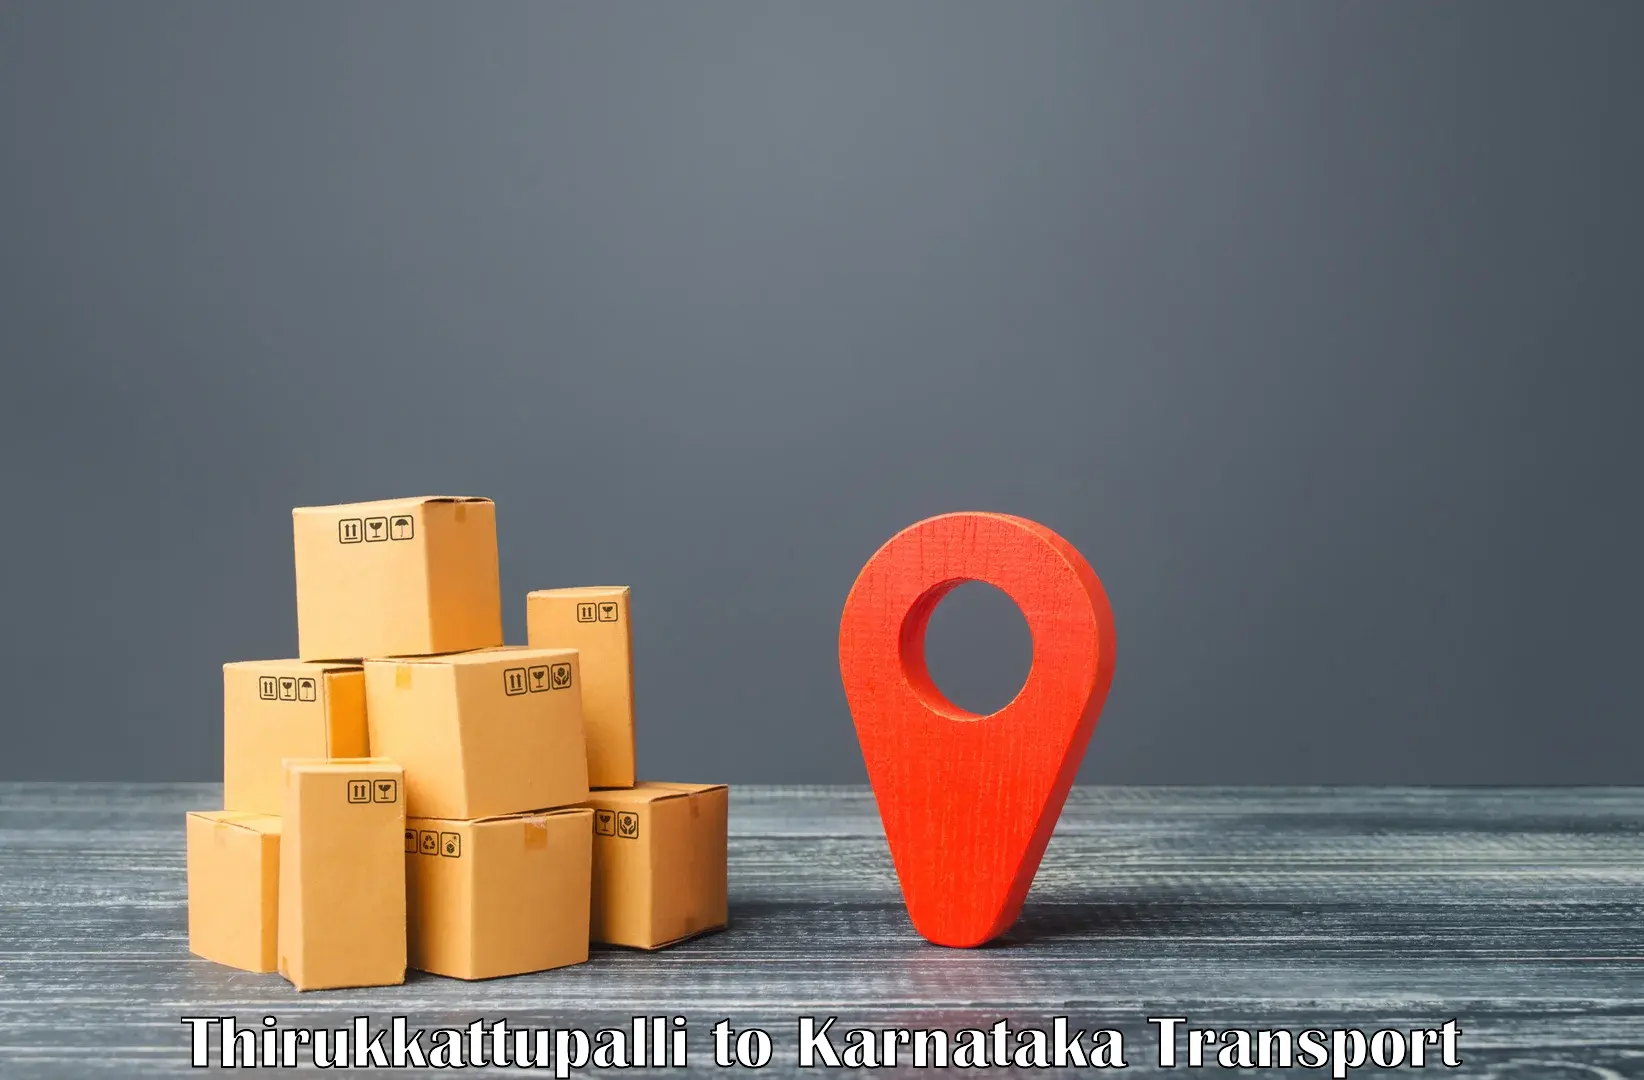 Interstate goods transport Thirukkattupalli to Karnataka